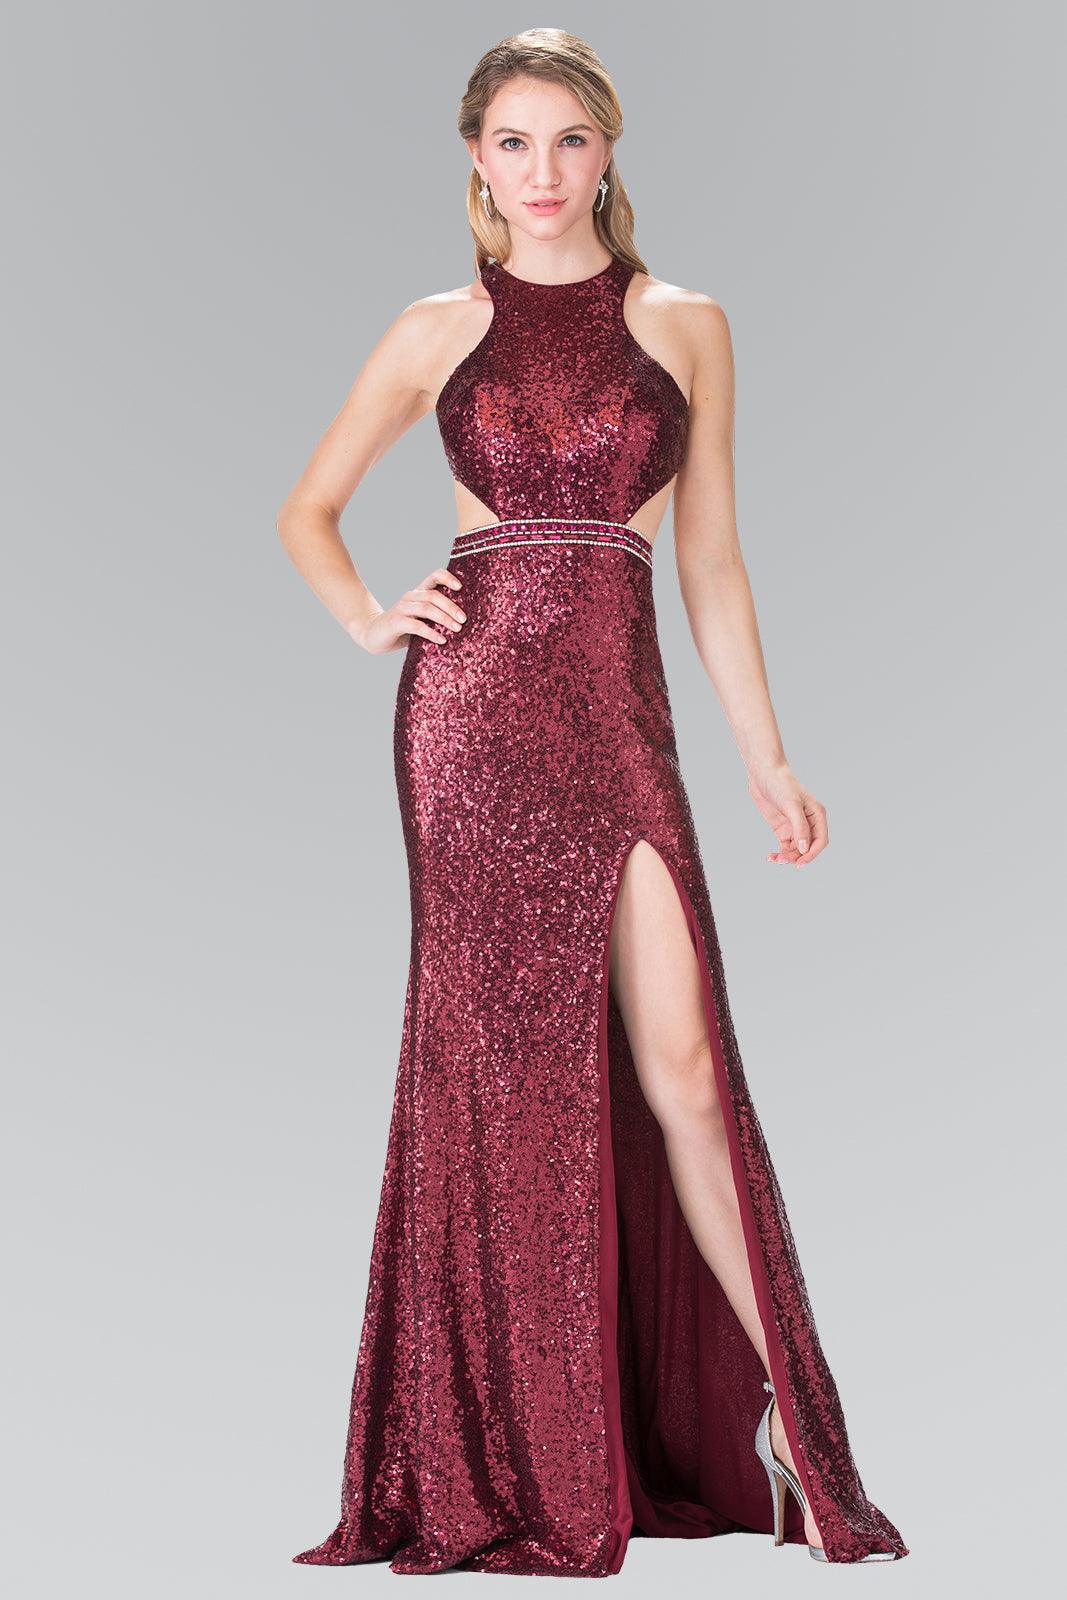 Prom Formal Sequins Long Dress with Side Slit - The Dress Outlet Elizabeth K